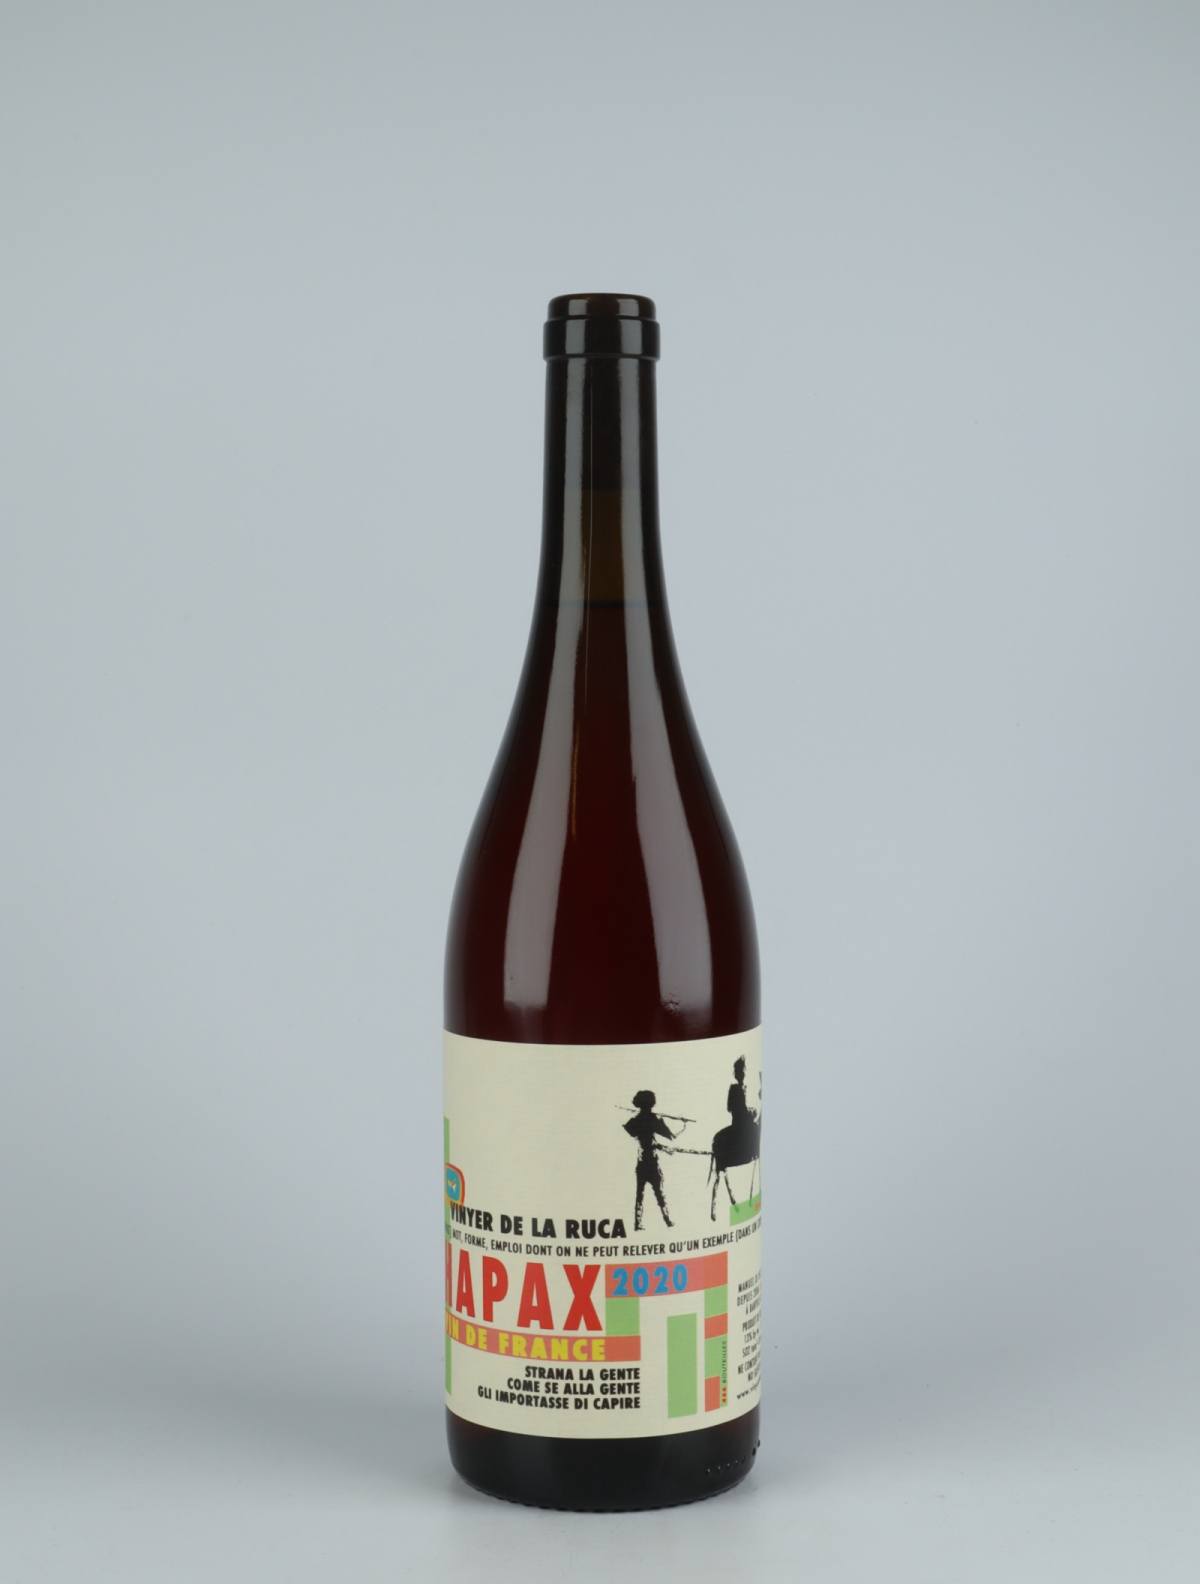 En flaske 2020 Hapax Rosé fra Vinyer de la Ruca, Rousillon i Frankrig